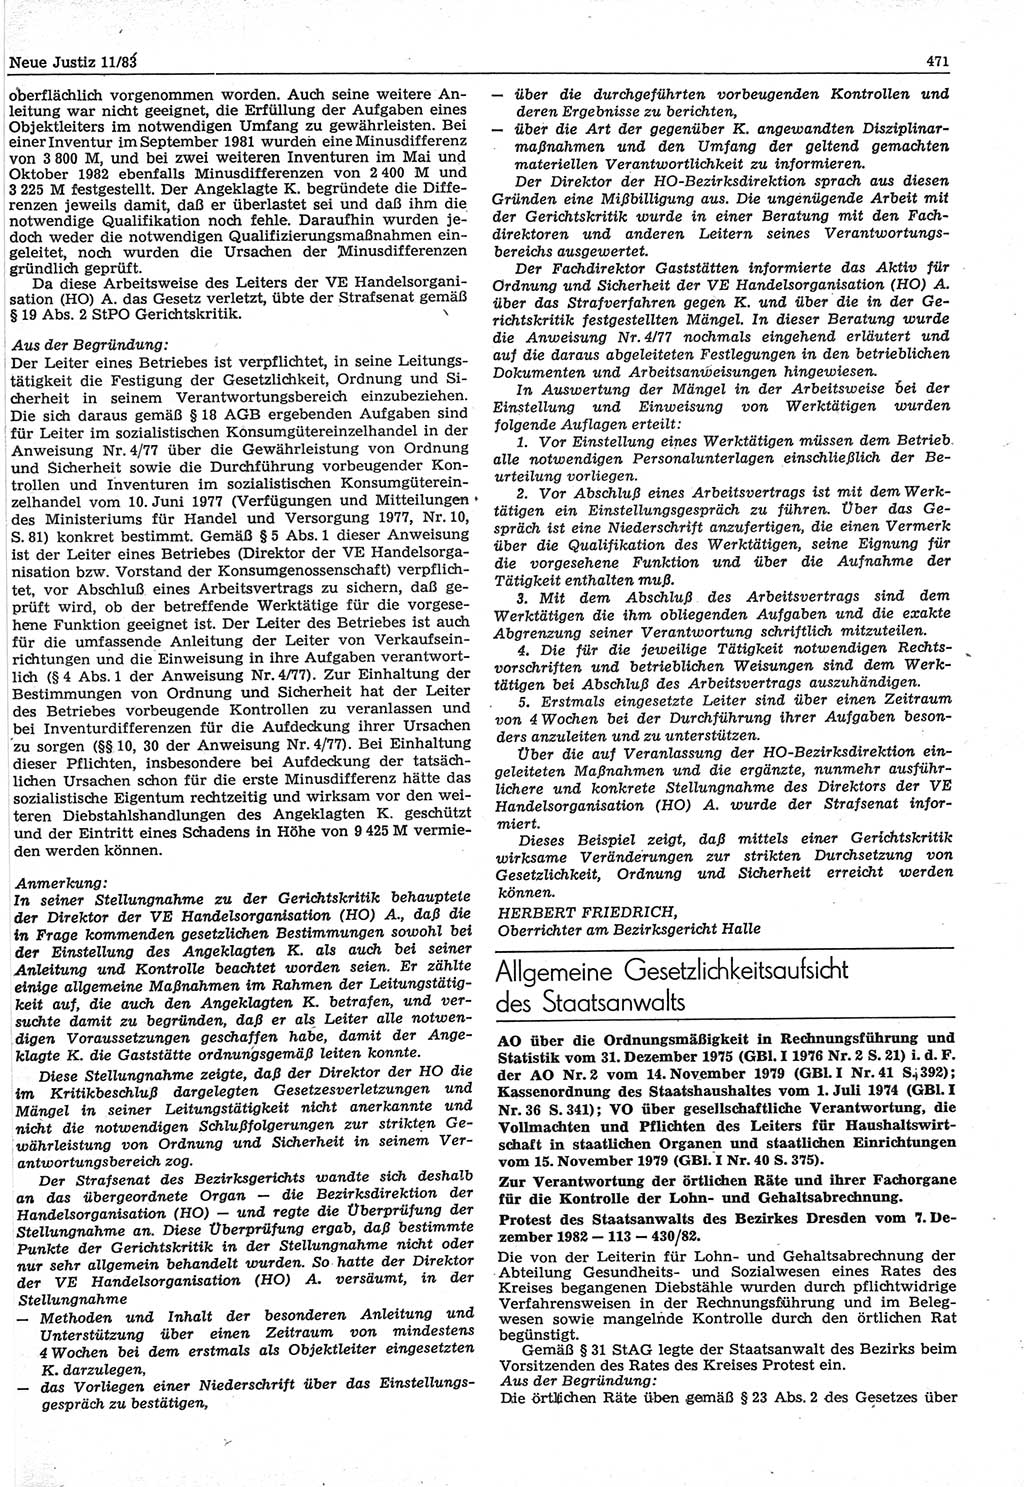 Neue Justiz (NJ), Zeitschrift für sozialistisches Recht und Gesetzlichkeit [Deutsche Demokratische Republik (DDR)], 37. Jahrgang 1983, Seite 471 (NJ DDR 1983, S. 471)